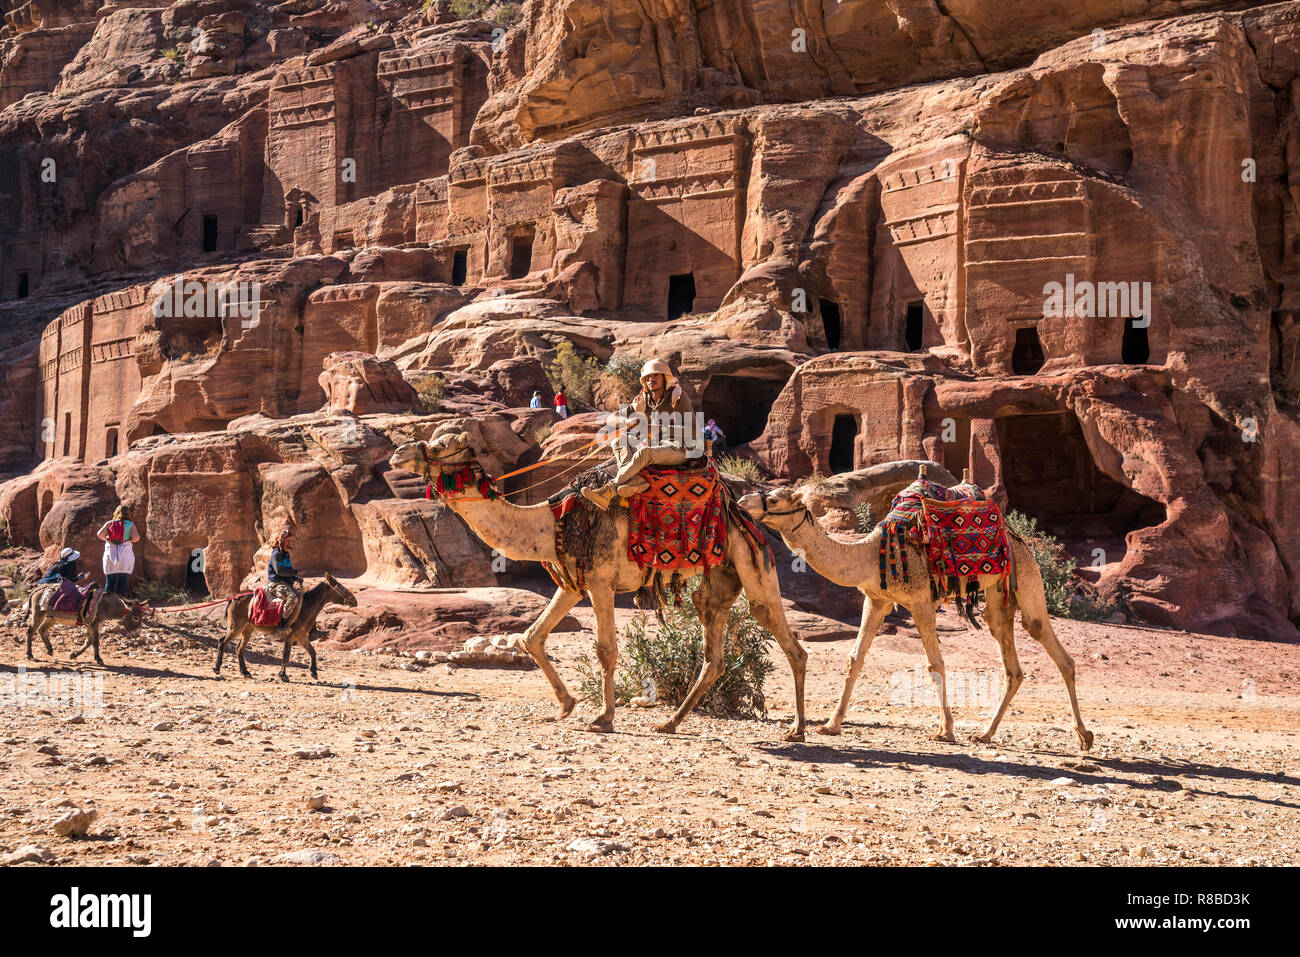 Kamele in der historischen Ruinenstätte Petra, Jordanien, Asien | cammelli all'antica città di Petra, Giordania, Asia Foto Stock